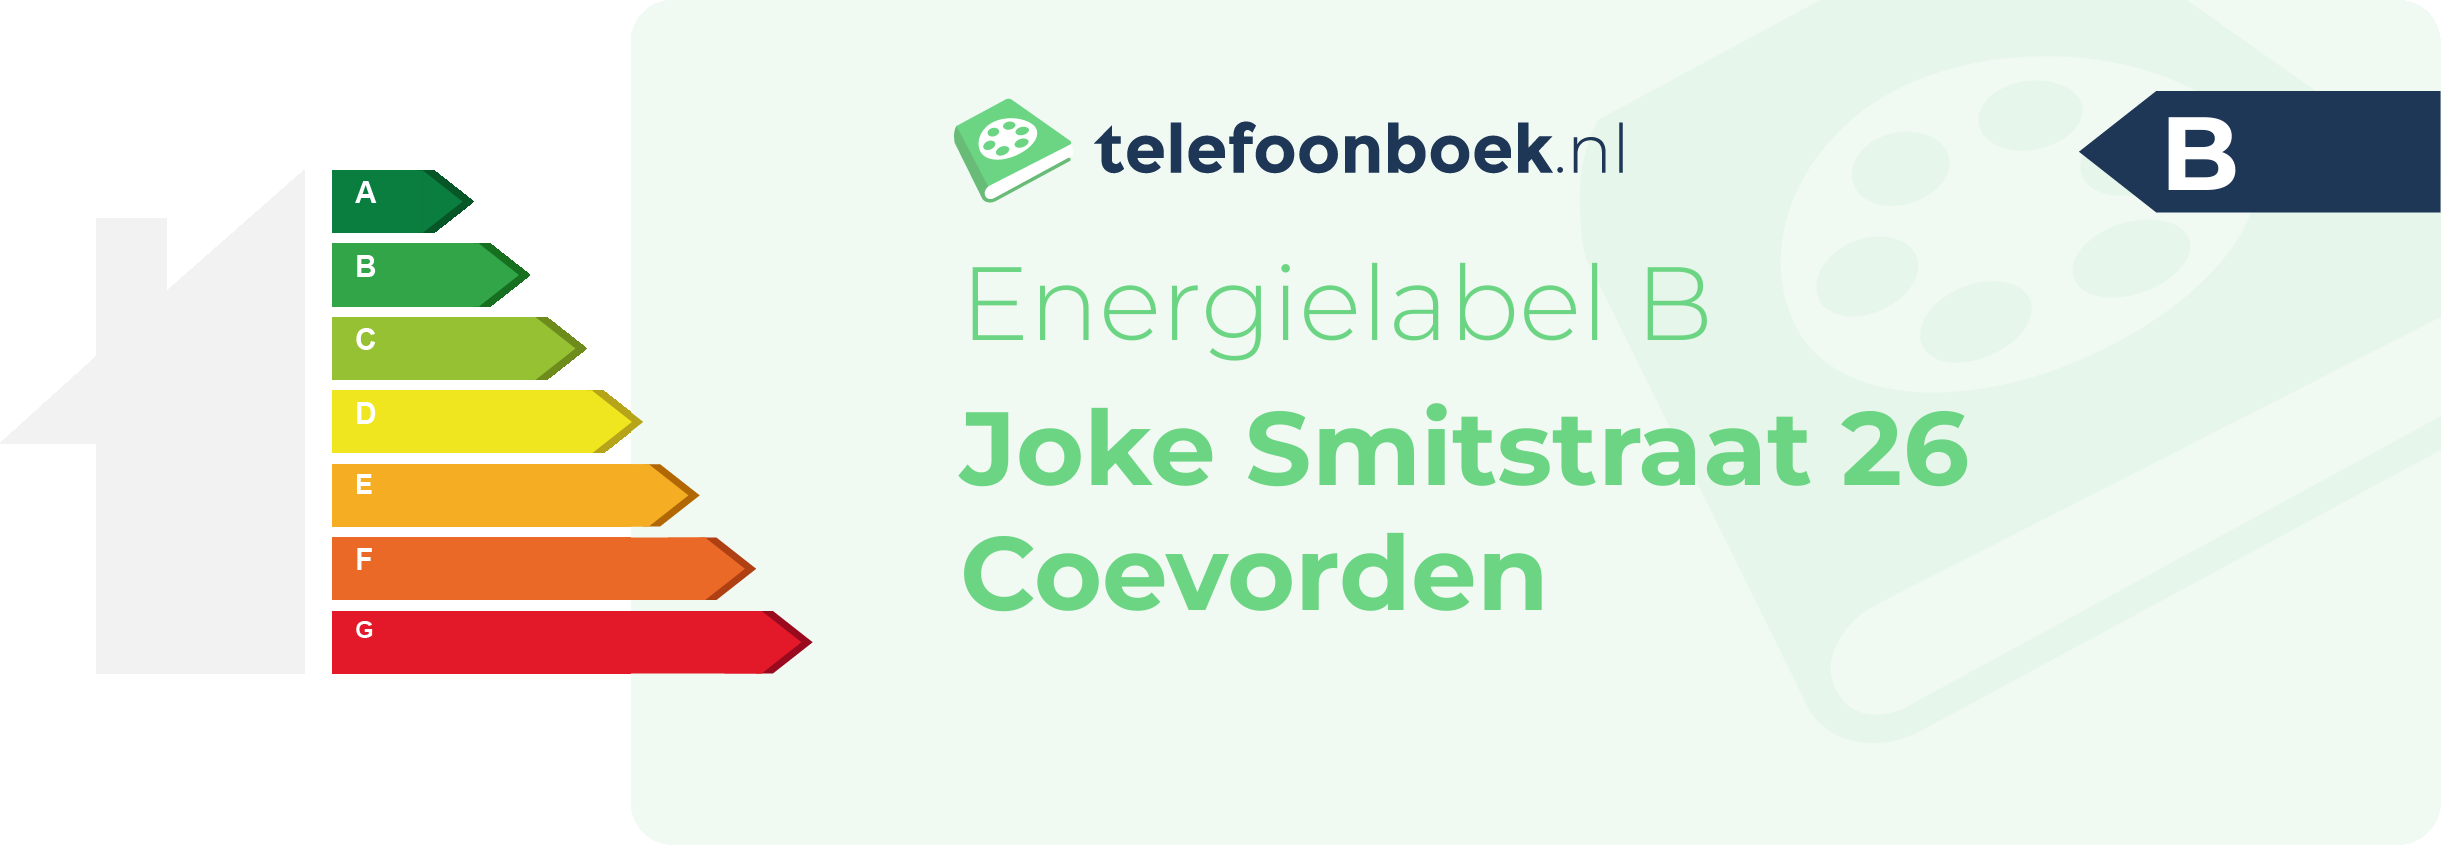 Energielabel Joke Smitstraat 26 Coevorden